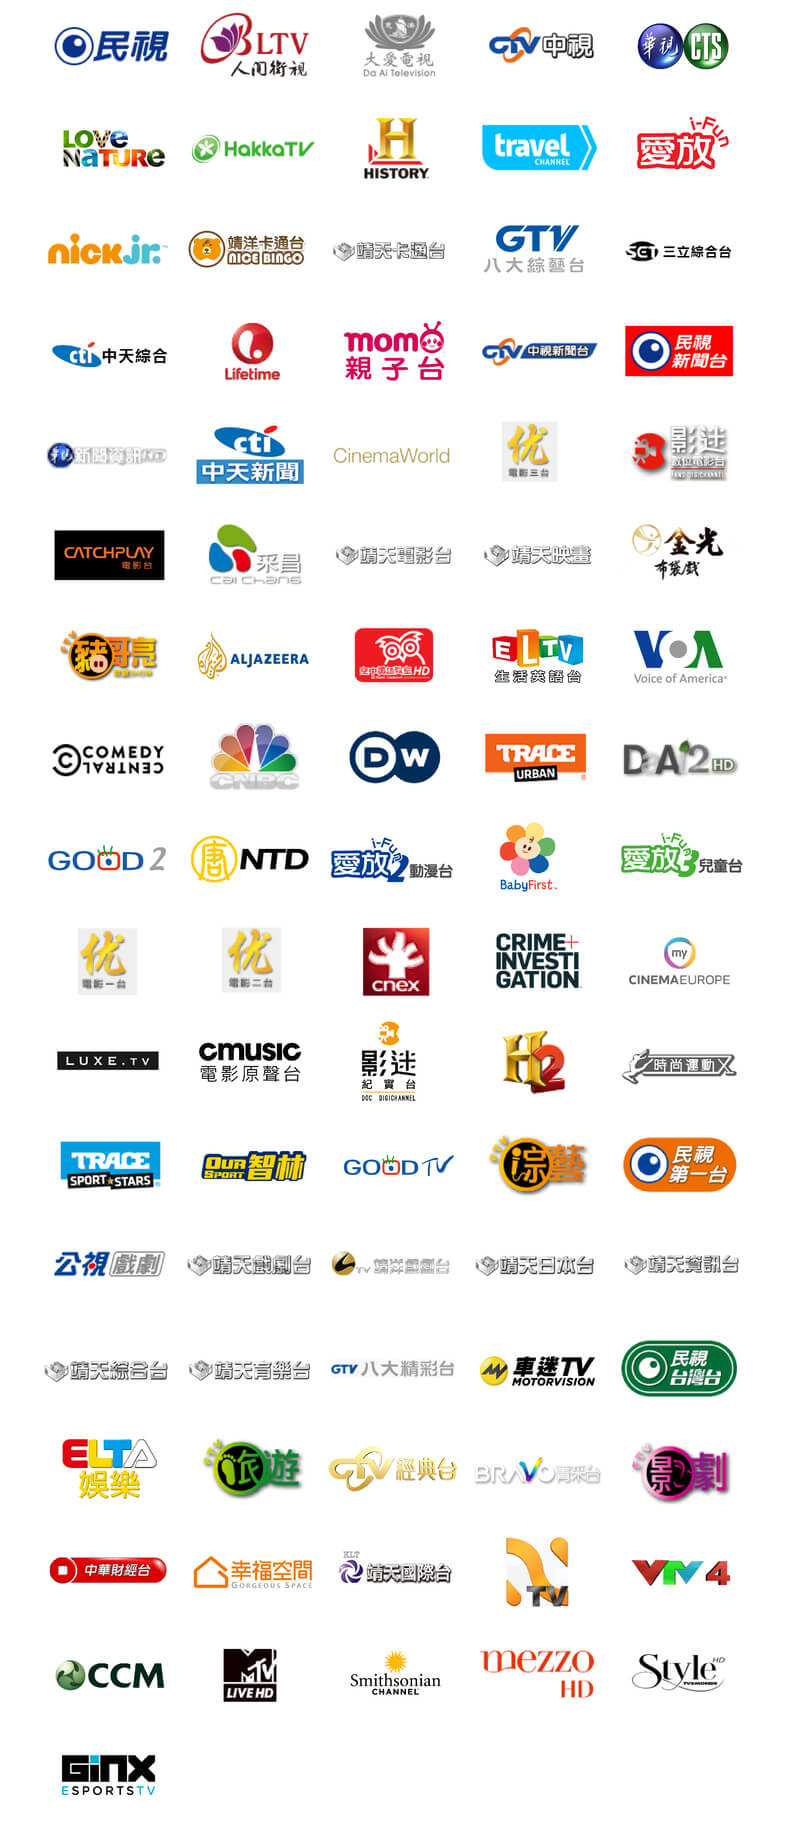 4gtv-channels-logo